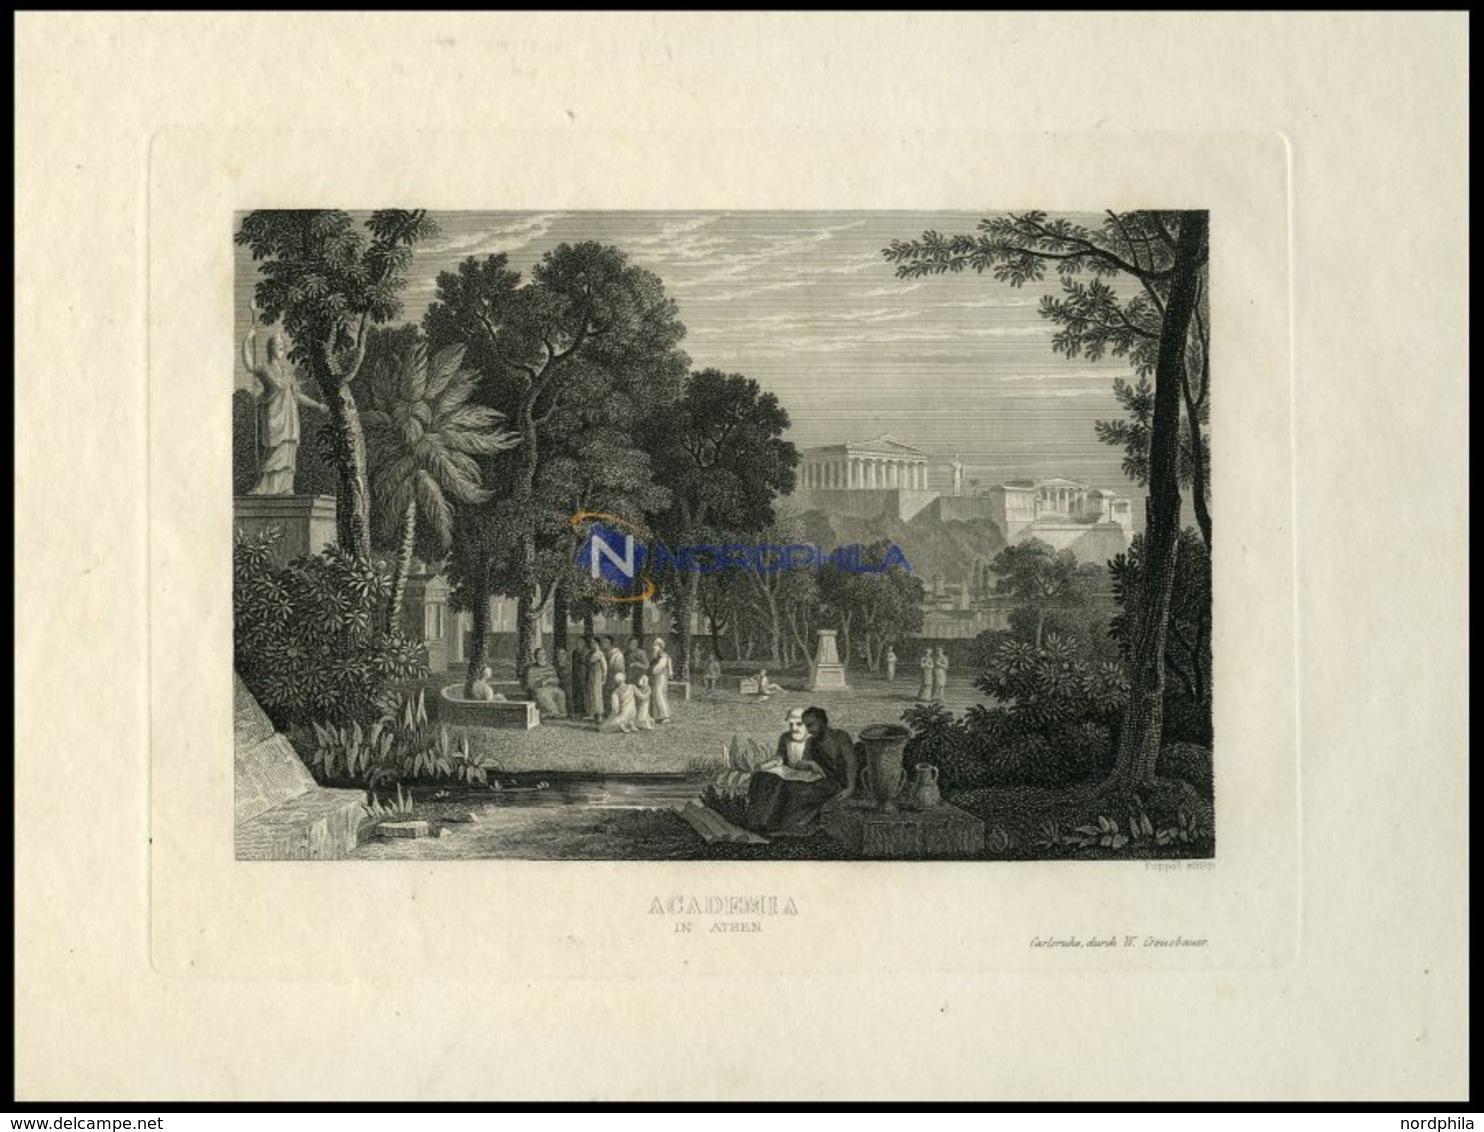 ATHEN: Die Akademie, Stahlstich Von Poppel Um 1840 - Lithographien